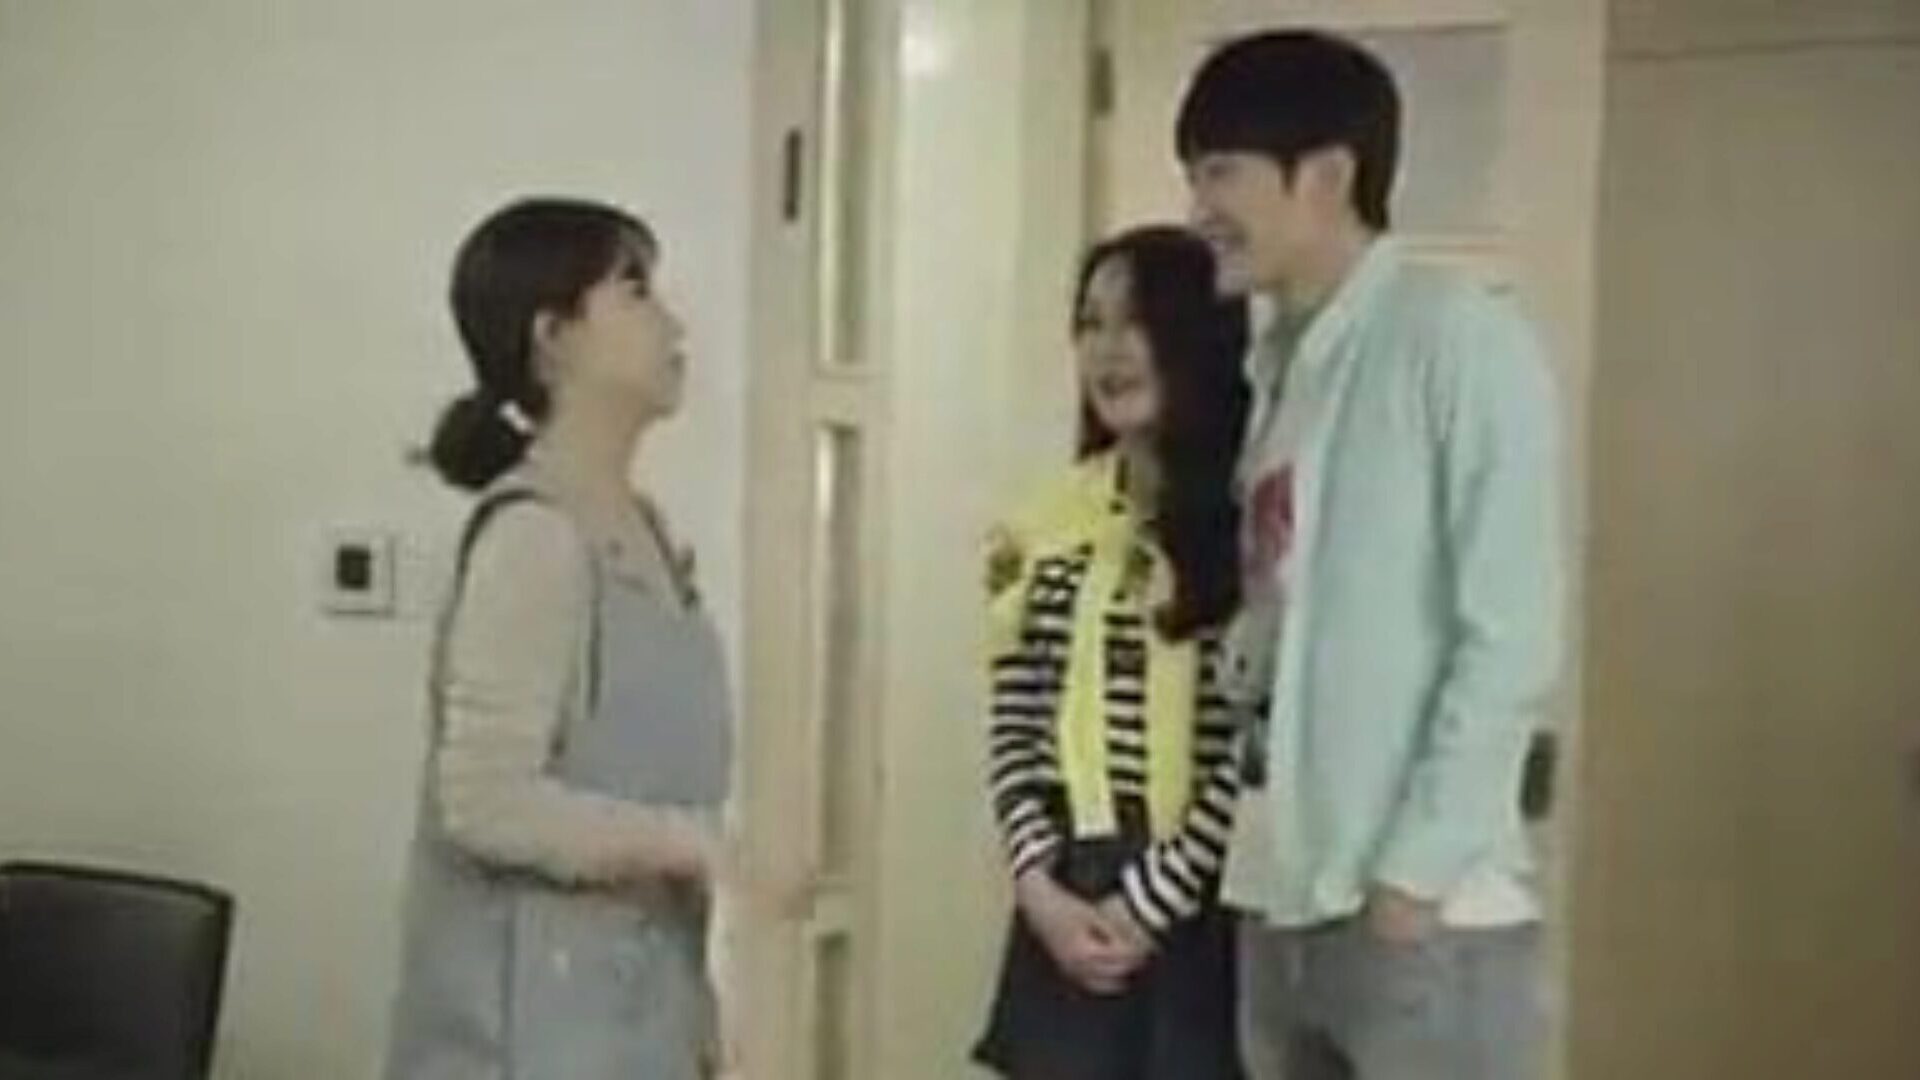 prietenul mamei și fiului se fute în bucătărie - film coreean clip de film coreean - prietenul mamei și fiului fute în bucătărie în timp ce ginerele bate cu gf-ul în cameră